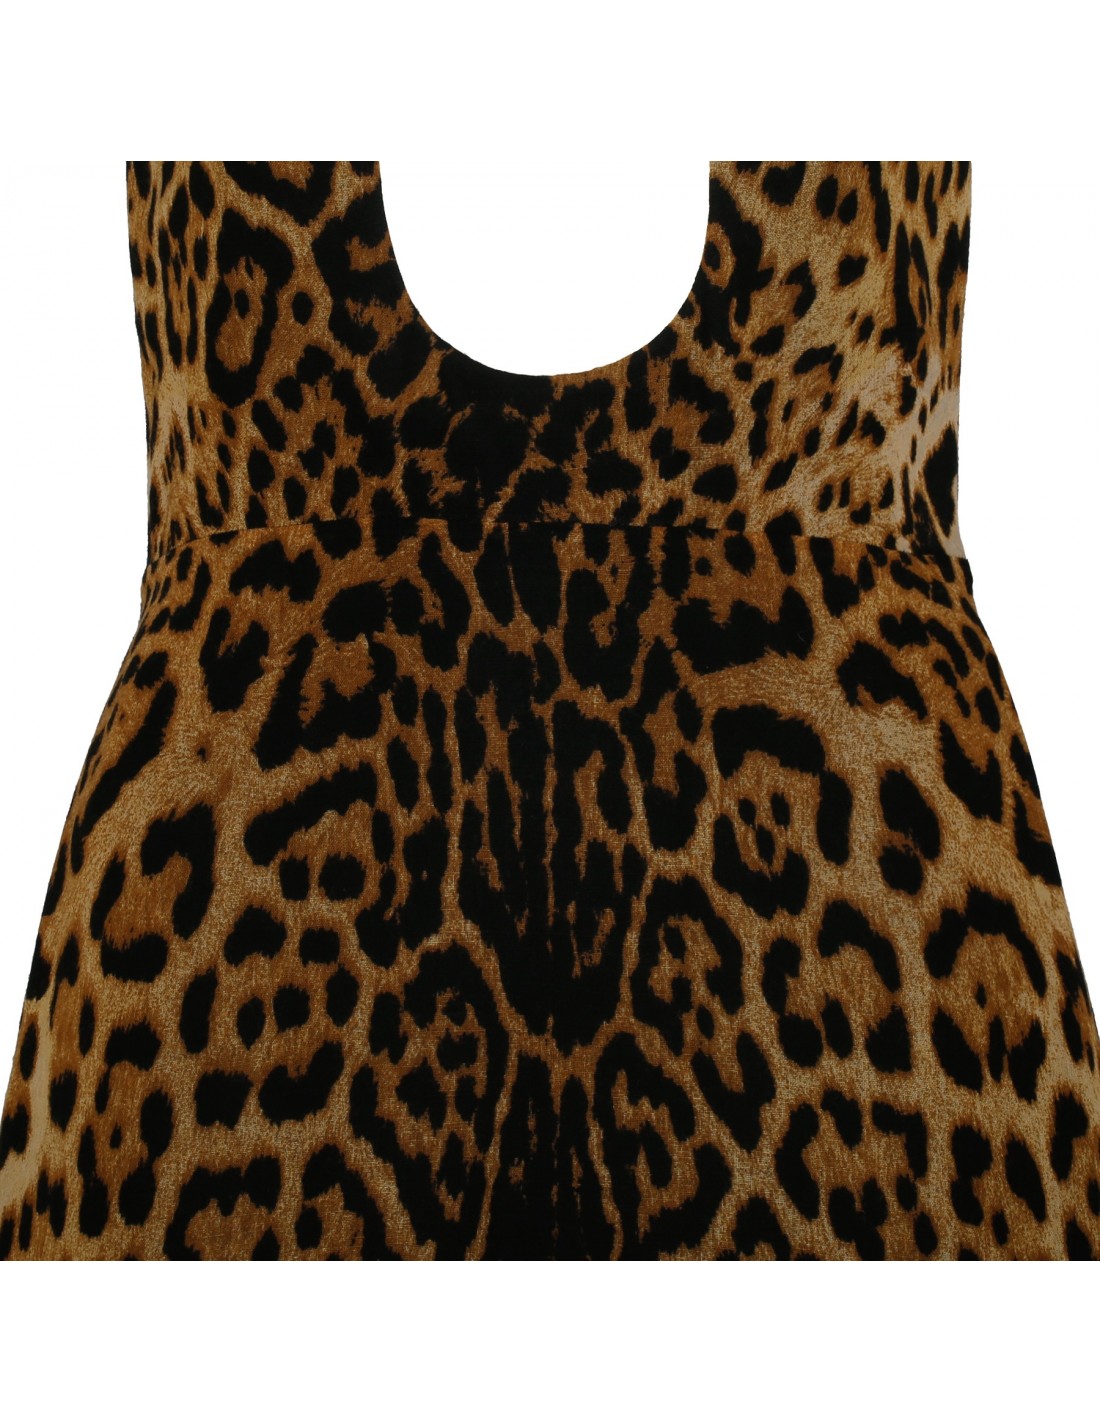 Leopard cut-out dress